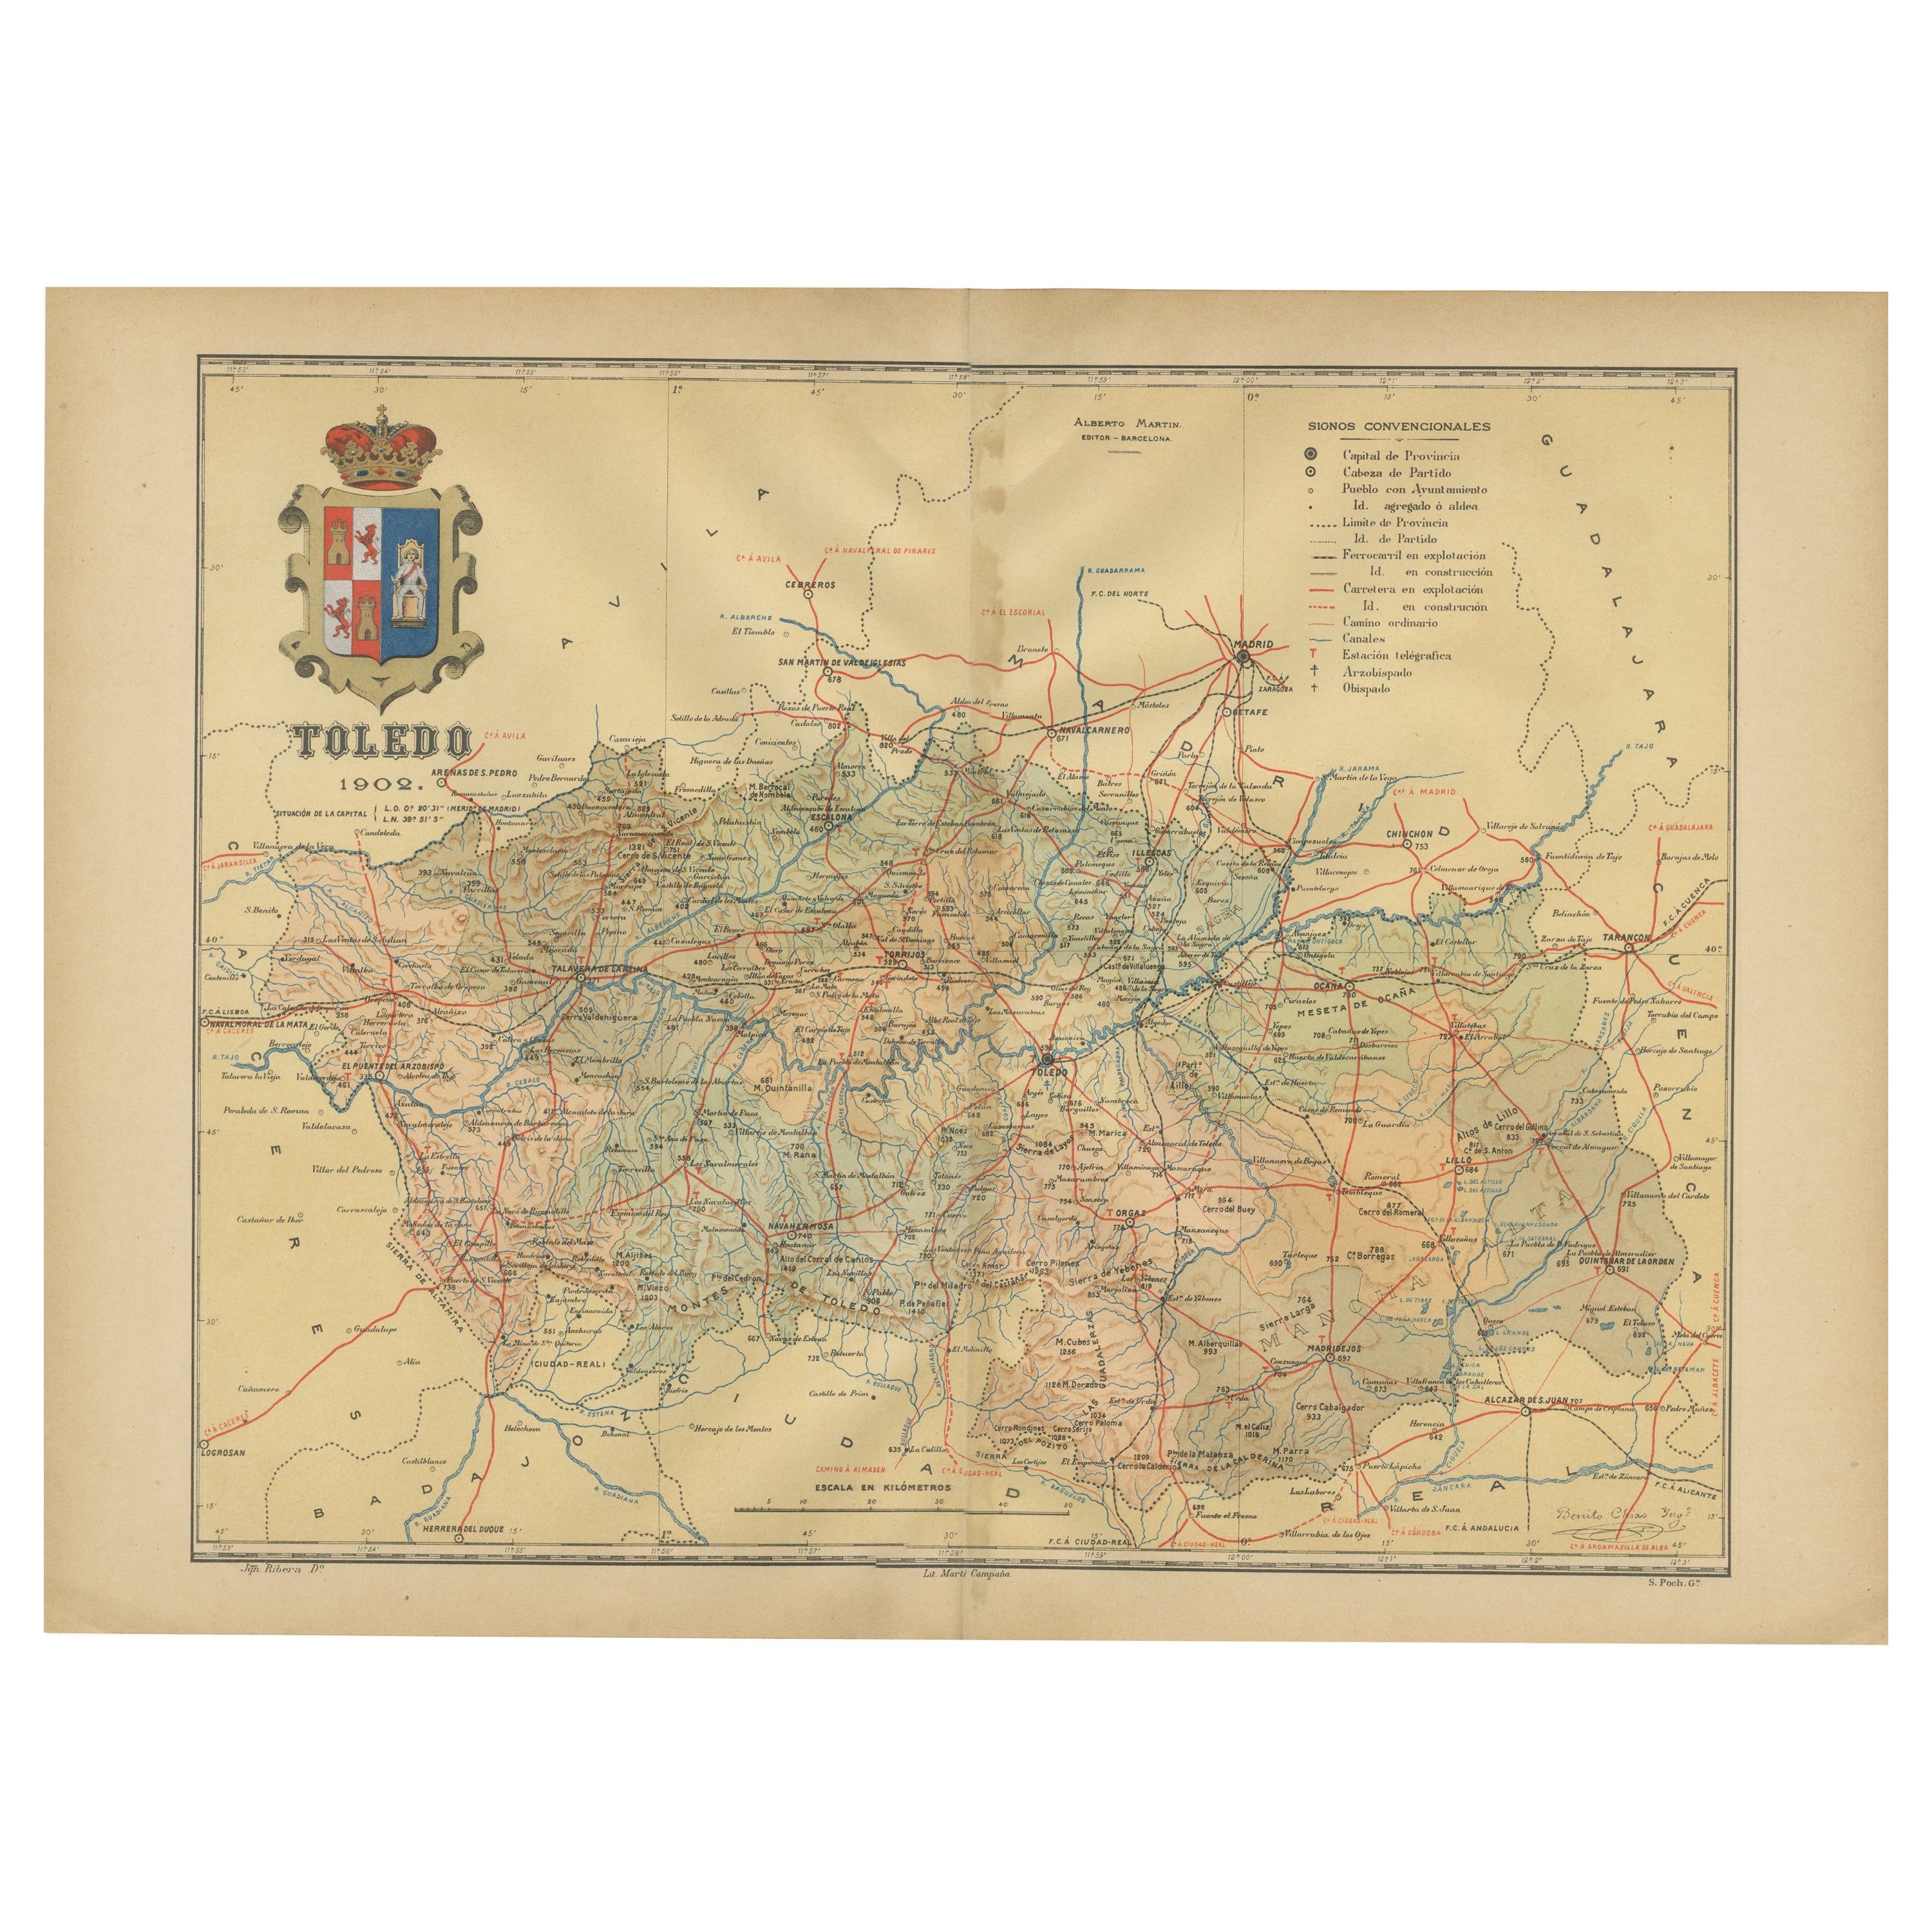 Toledo 1902: Eine historische Kartographische Studie dieser spanischen Provinz